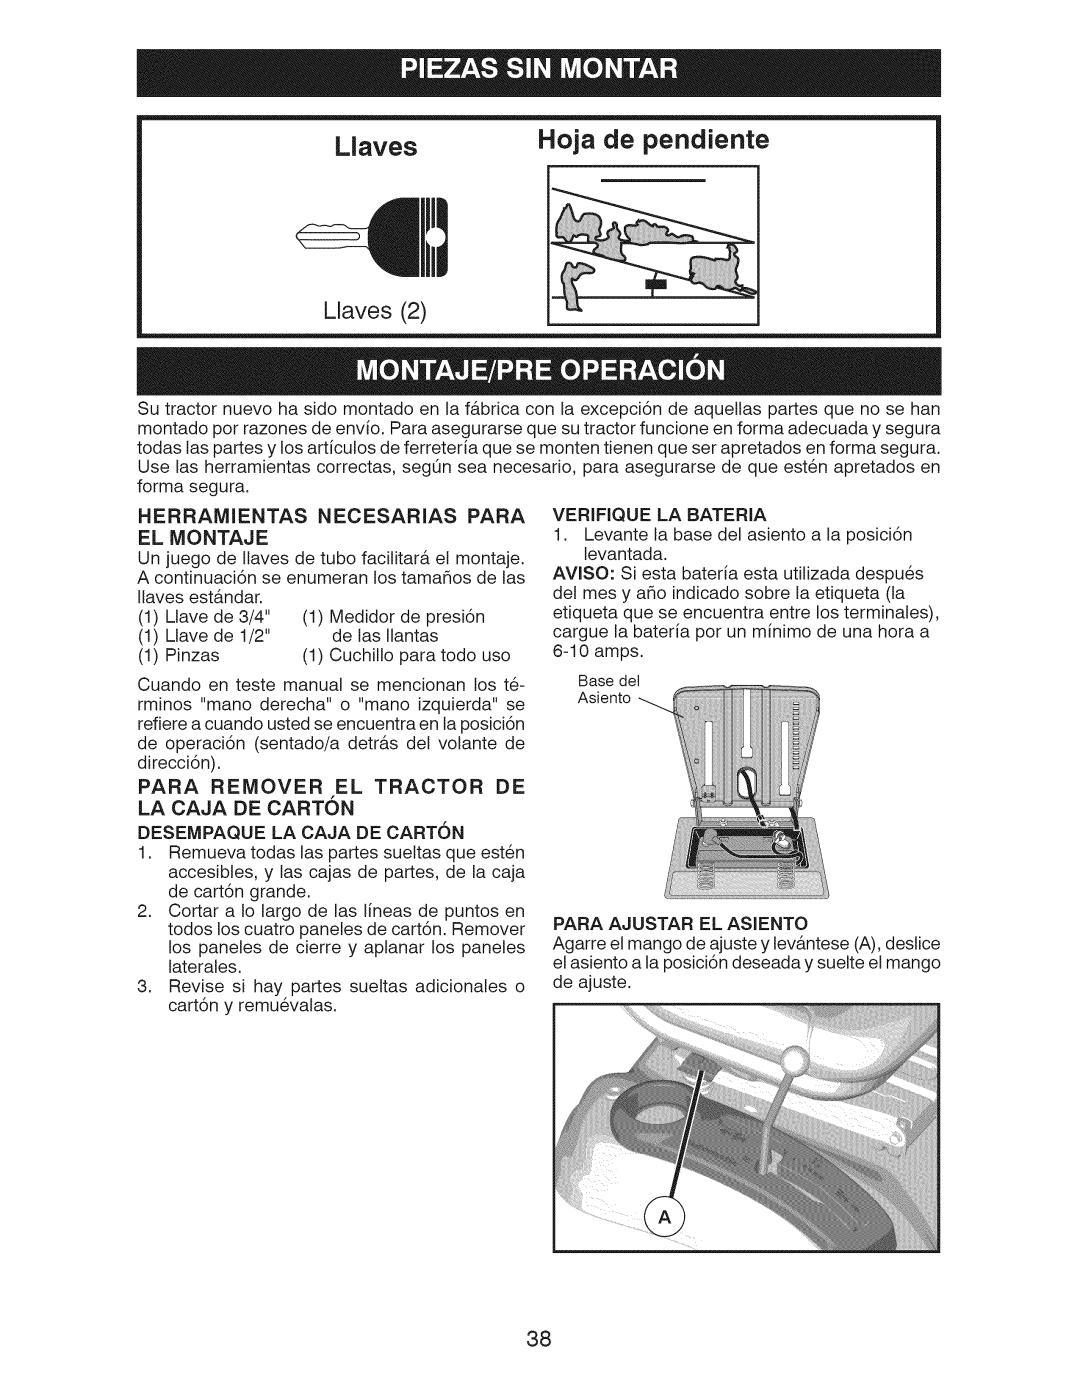 Craftsman 917.289244 owner manual Herramientas Necesarias Para EL Montaje, Para Remover EL Tractor DE, Verifique LA Bateria 